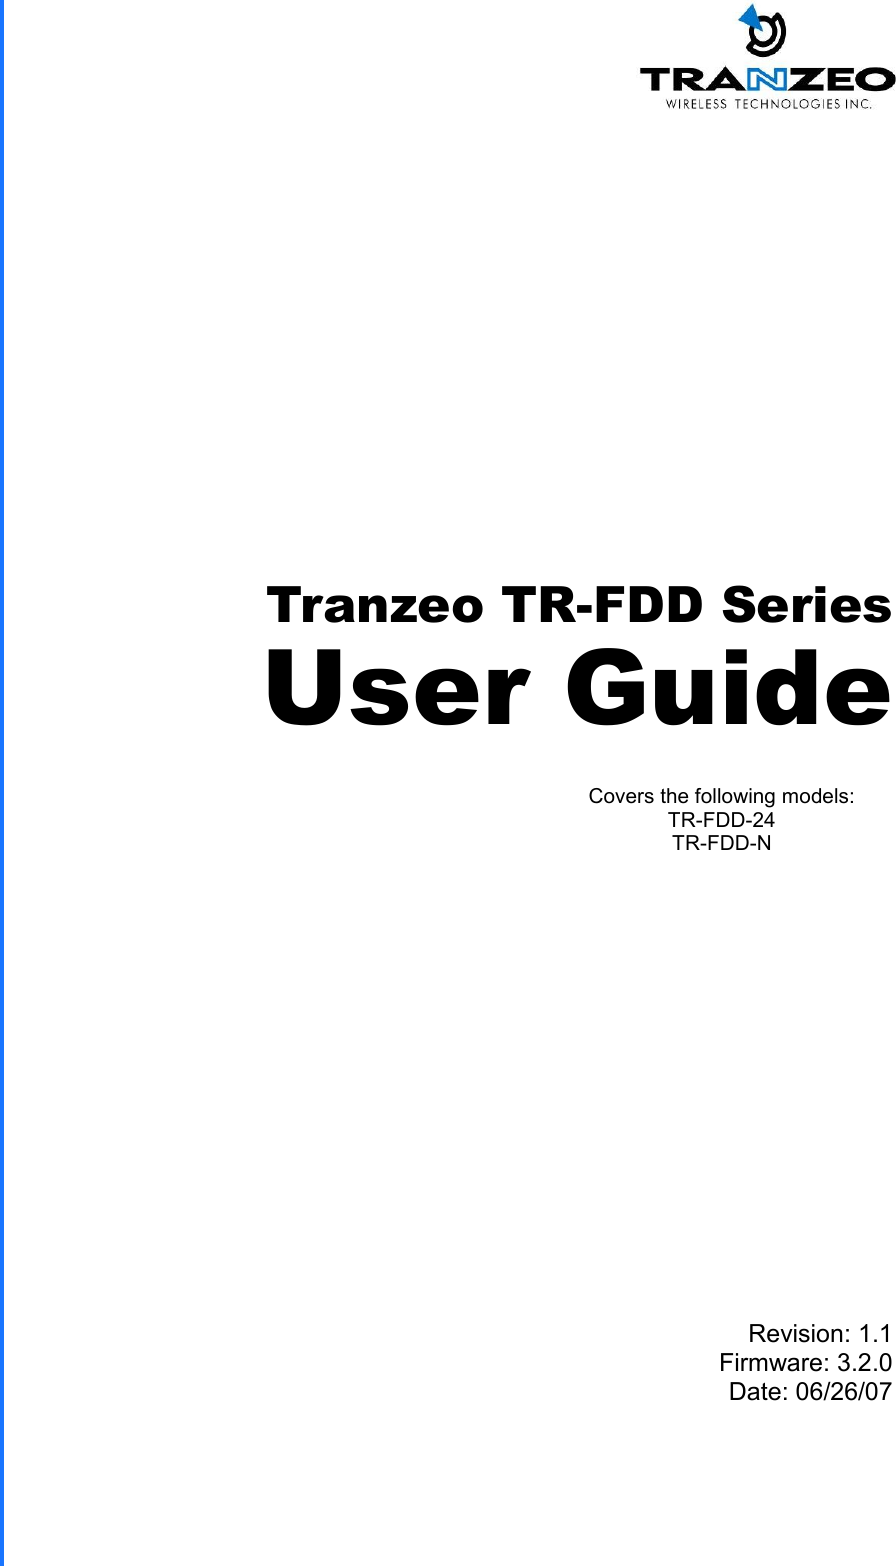  TRANZEO TR-FDD Revision: 1.1 Firmware: 3.2.0 Date: 06/26/07 Tranzeo TR-FDD Series User Guide Covers the following models:   TR-FDD-24 TR-FDD-N 